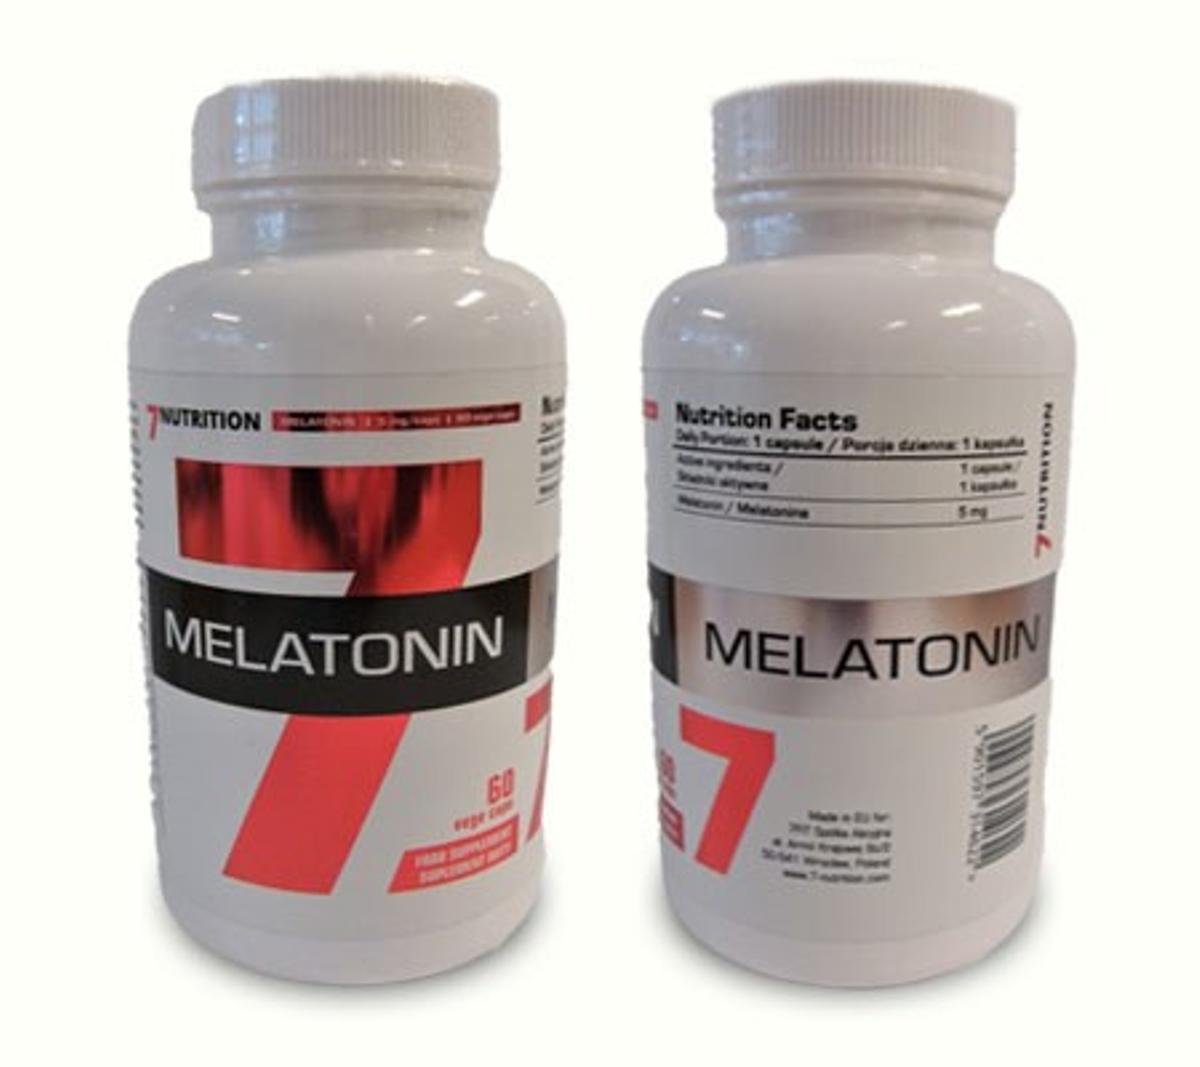 Este es el producto que ha sido prohibido por AESAN, 'Melatonin 7' de la compañía '7 Nutrition'